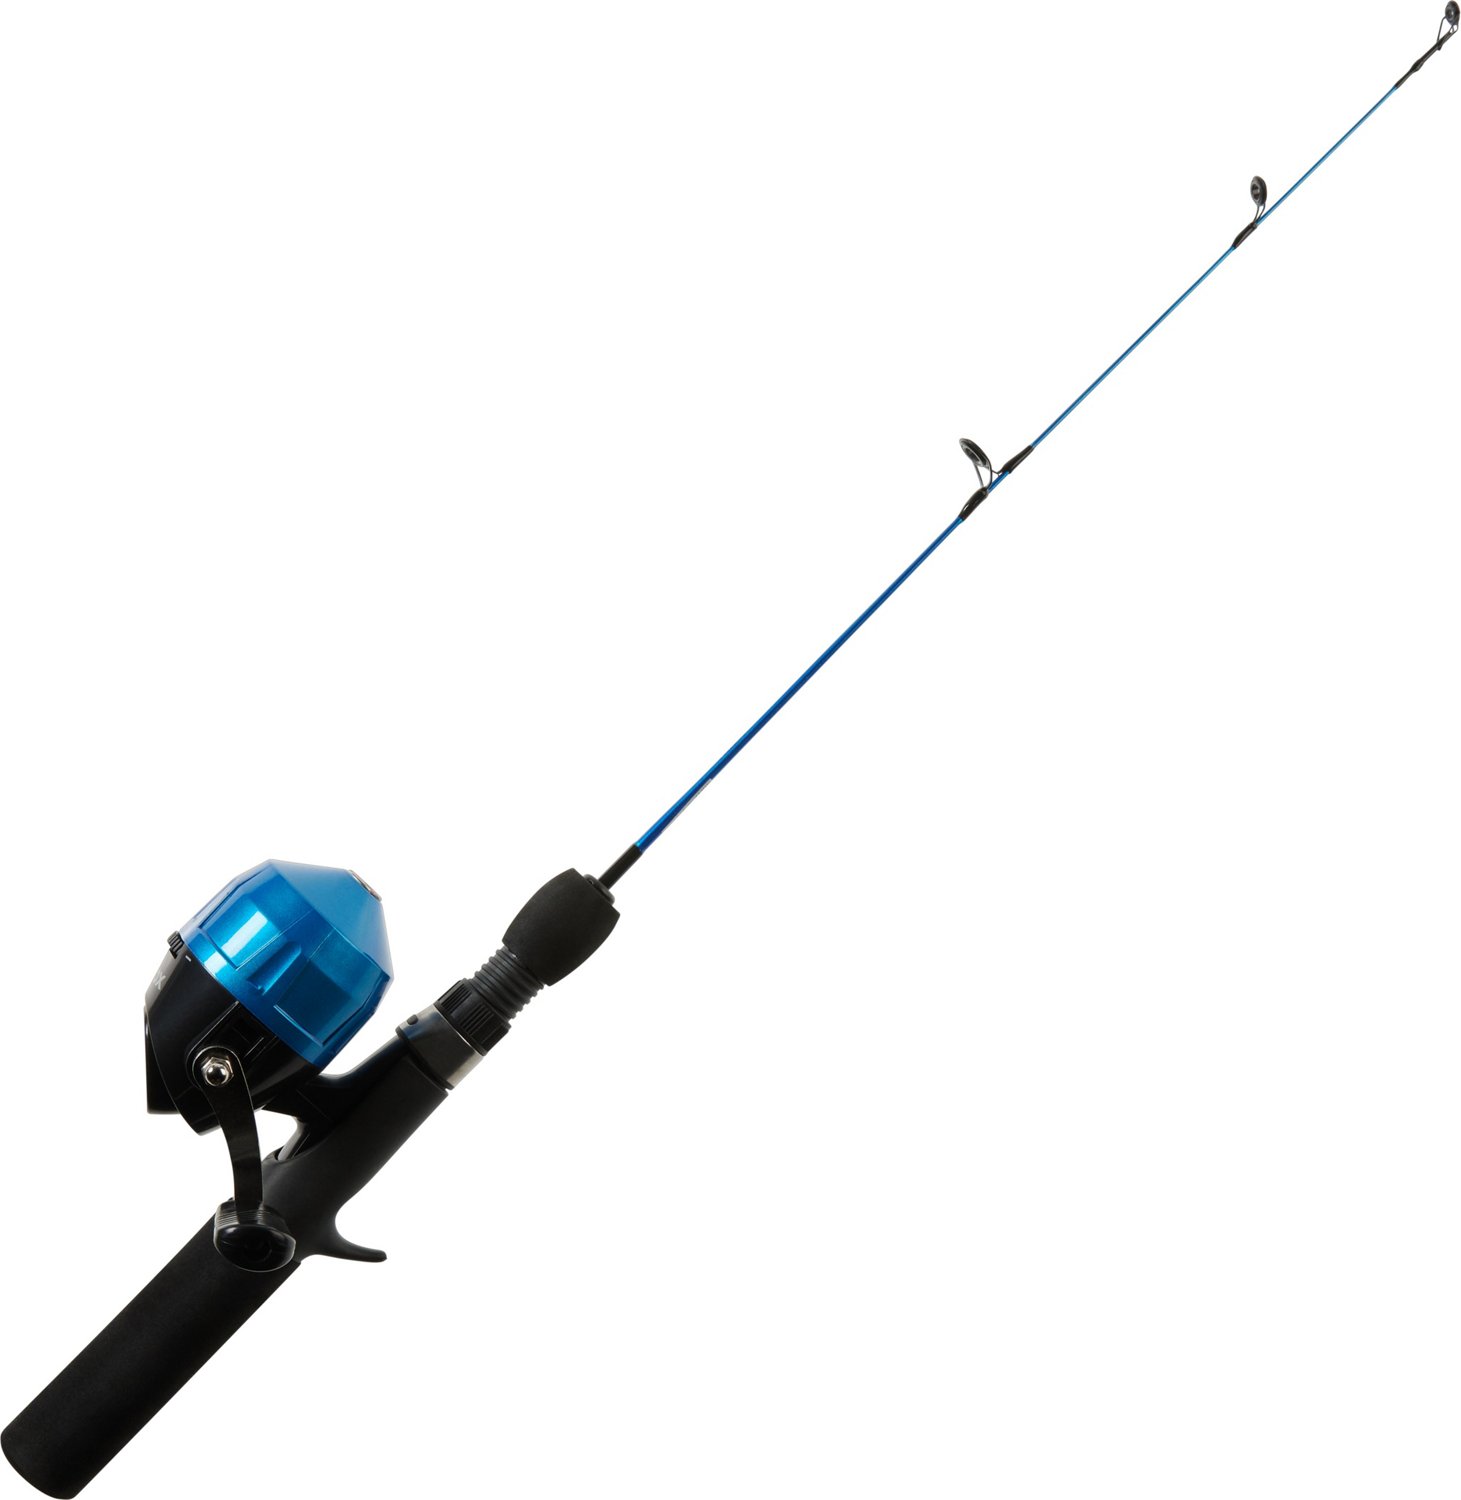 Zebco 808 Saltwater Spincast Reel Fishing Rod Combo 7 ft